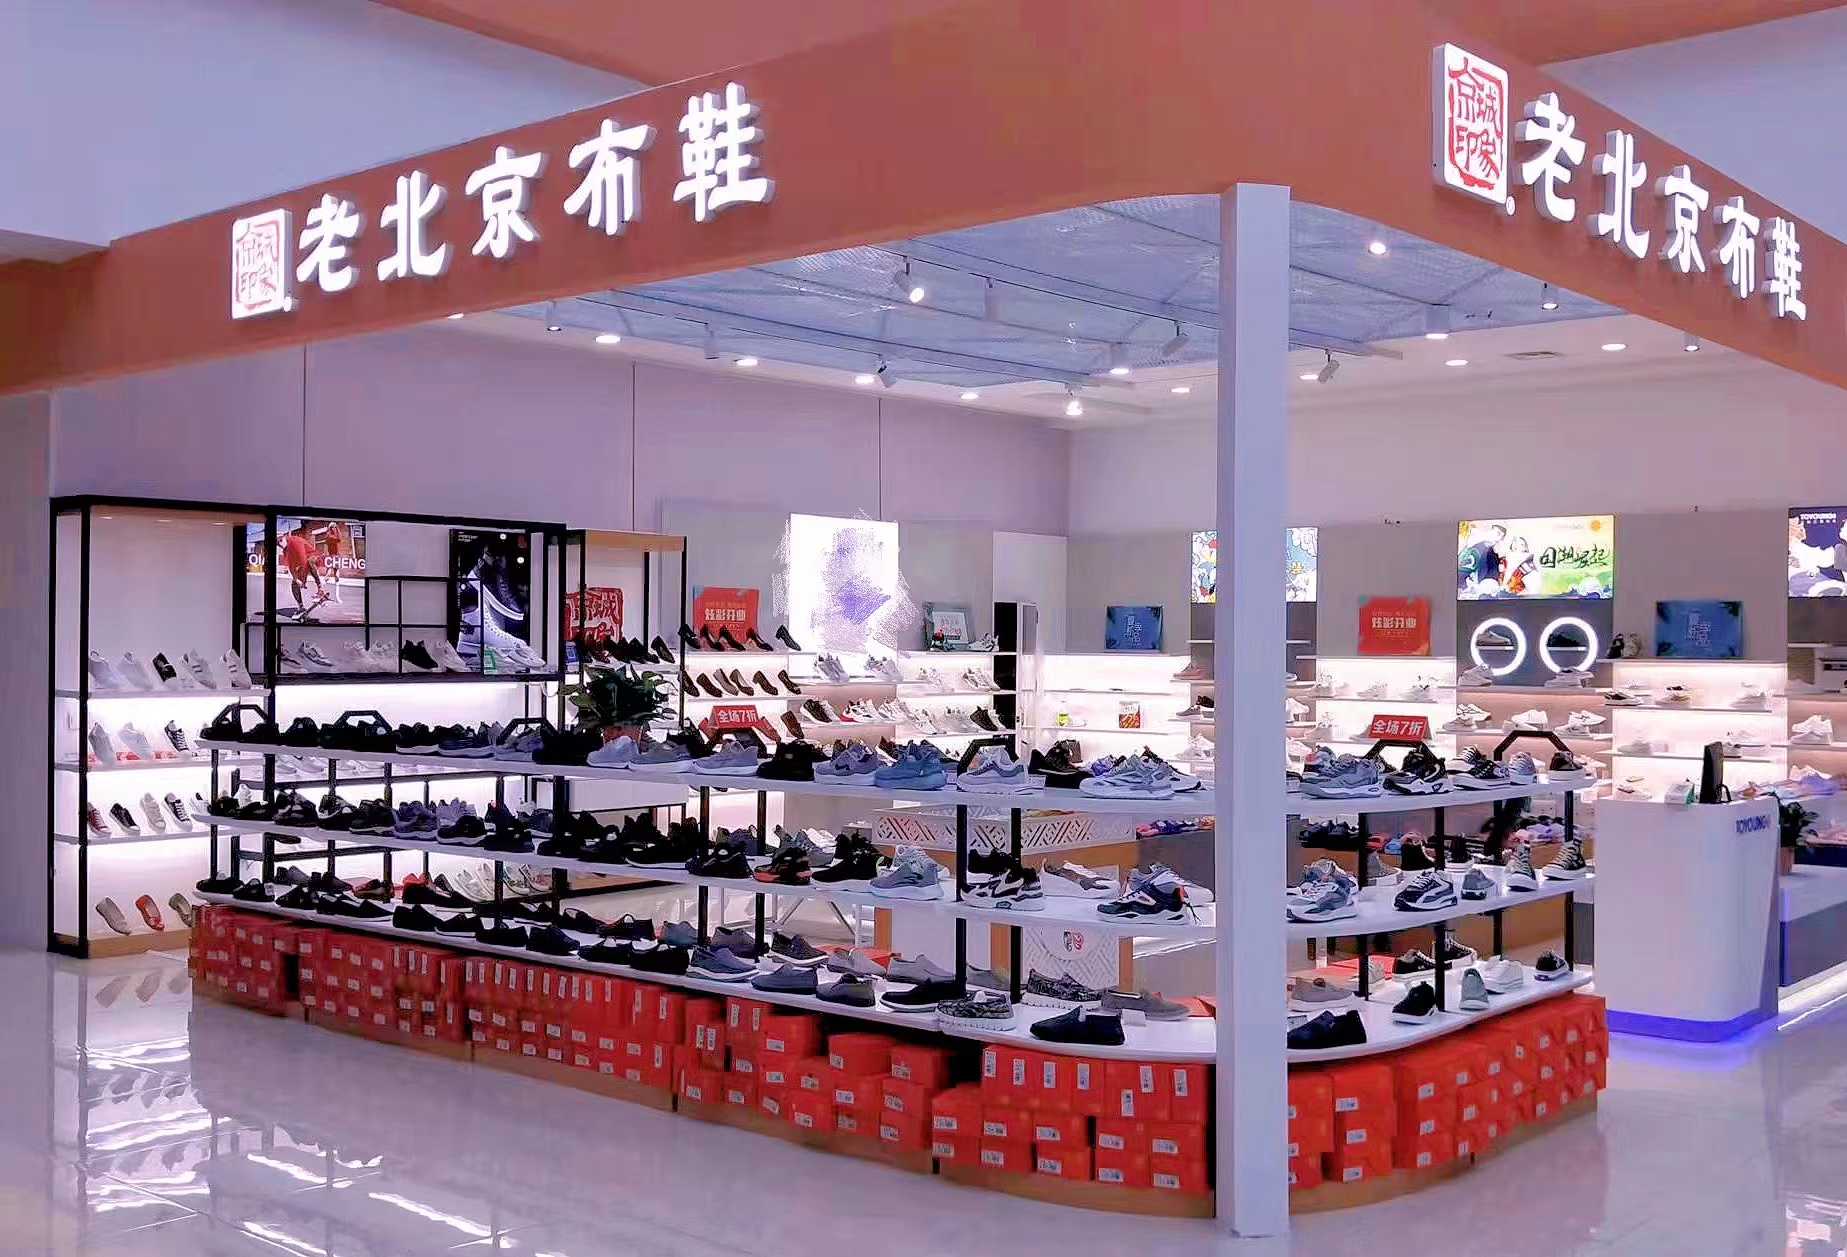 贺：京城印象老北京布鞋加盟店山东魏老板盛大开业！